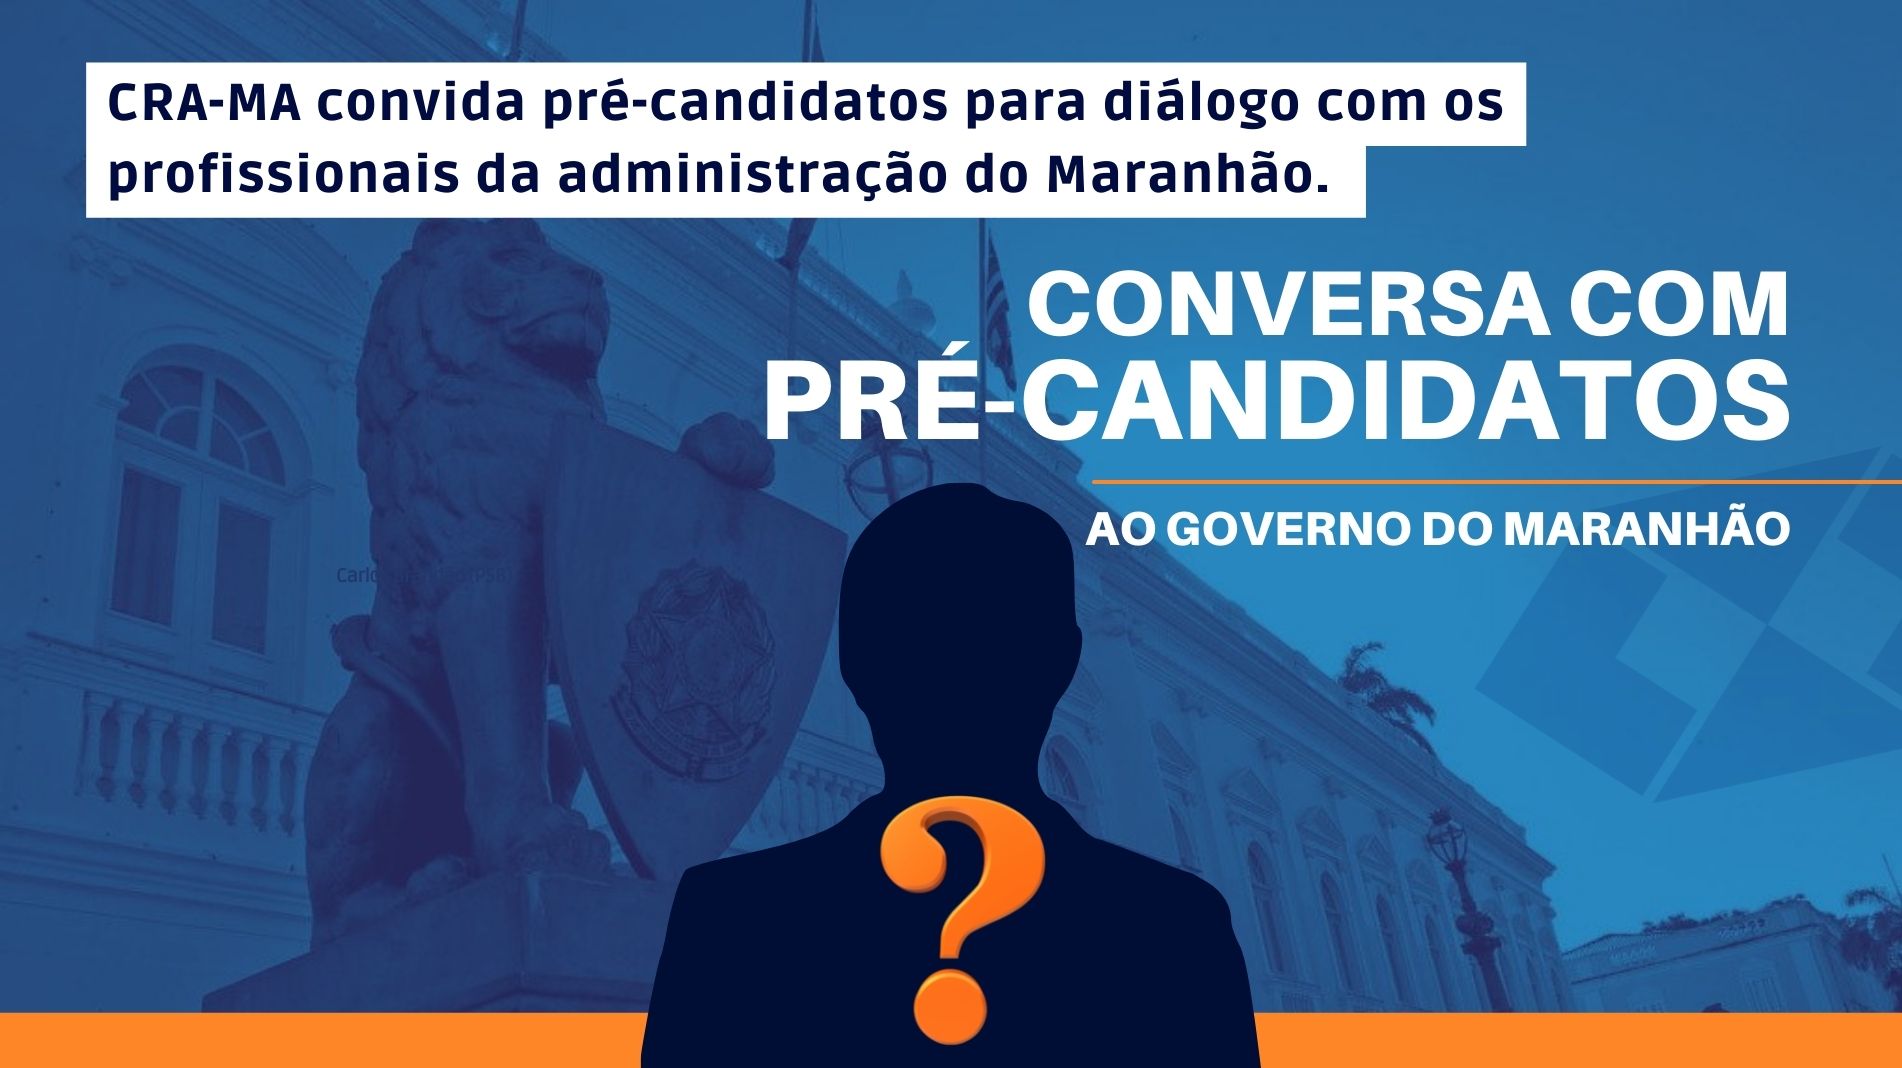 You are currently viewing CRA-MA convida pré-candidatos para diálogo com os profissionais da administração do Maranhão.